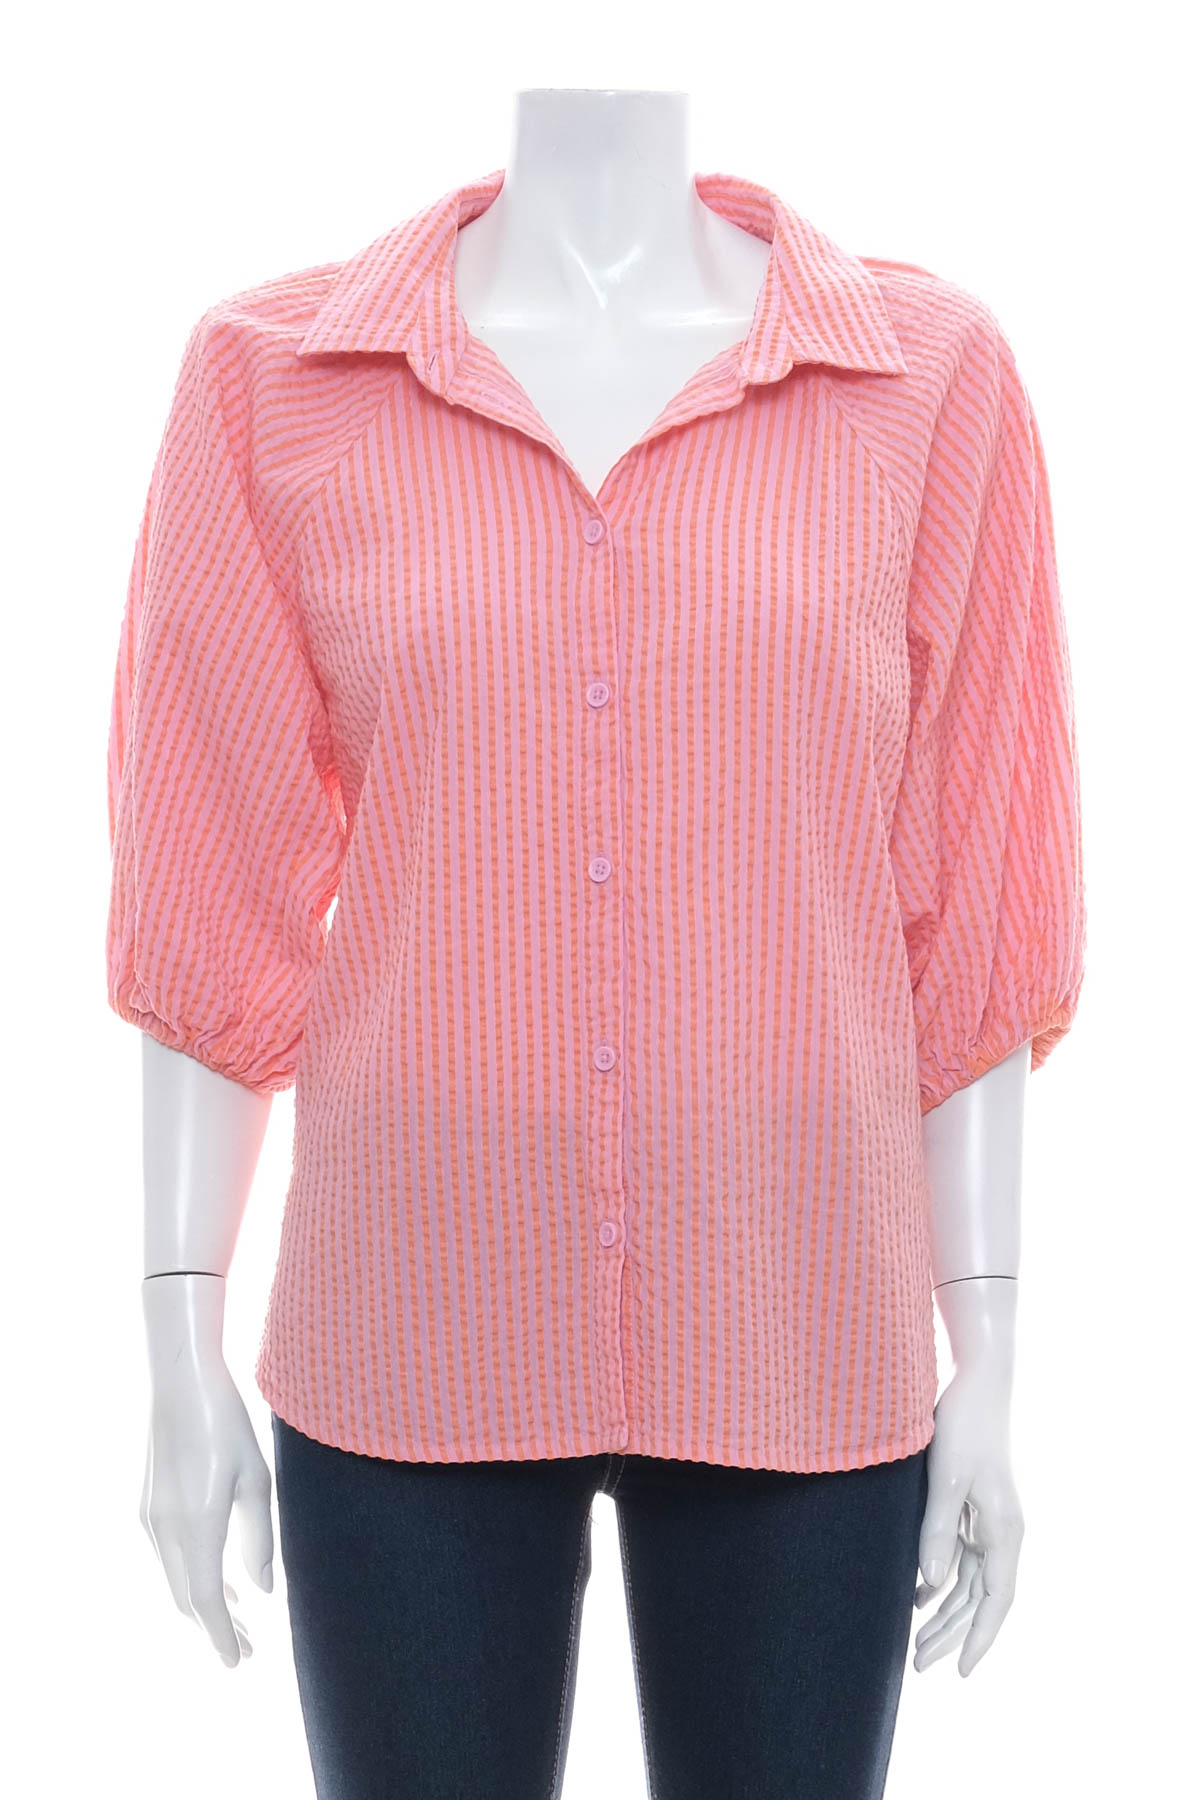 Γυναικείο πουκάμισο - LINDEX - 0